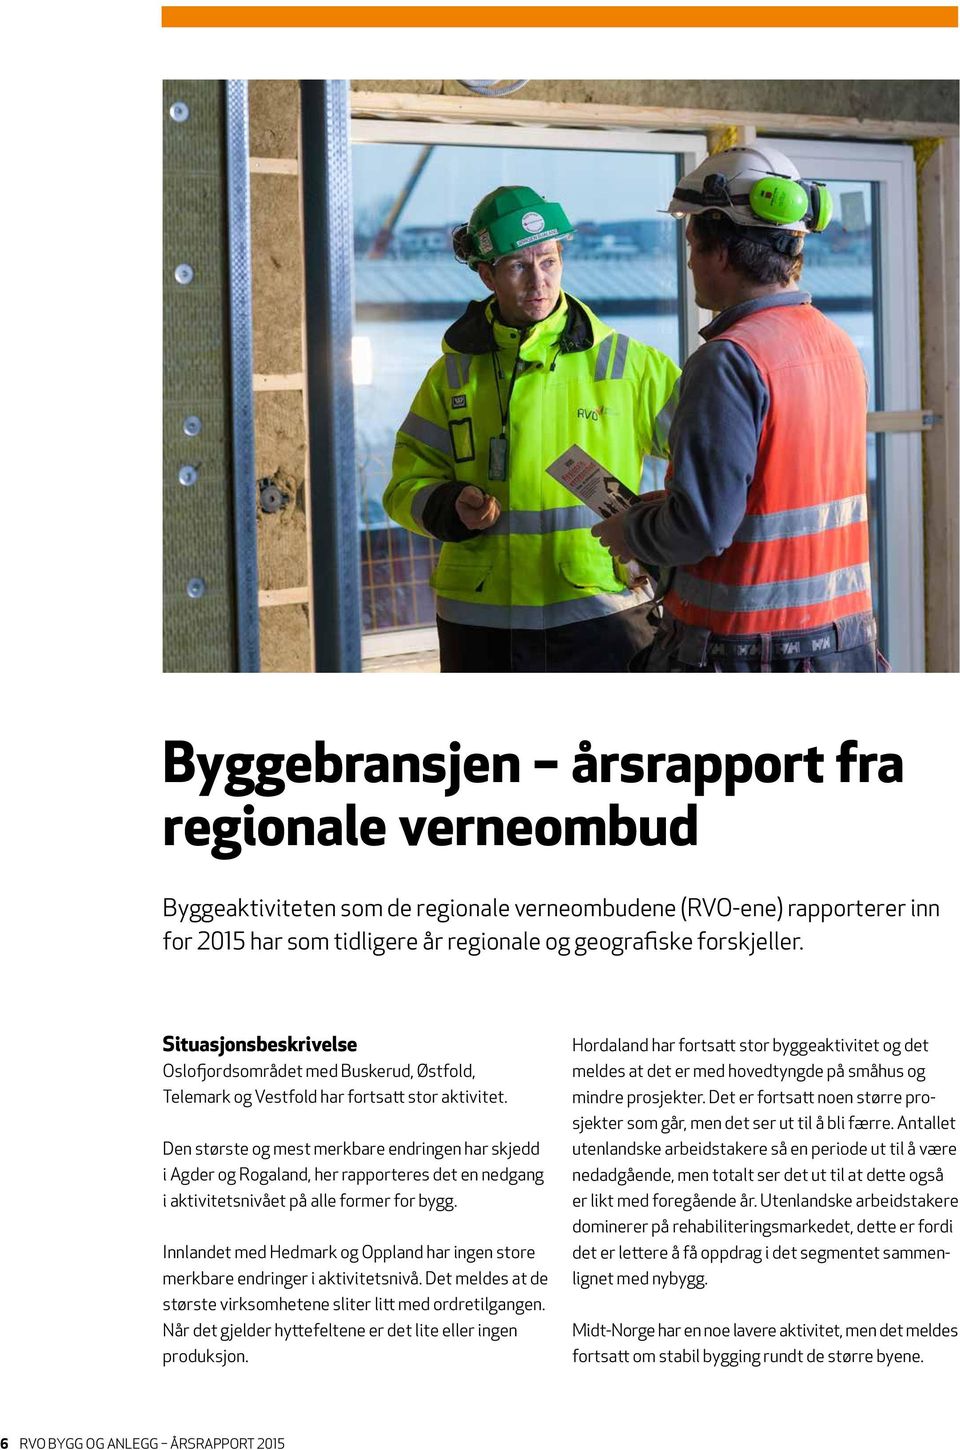 Den største og mest merkbare endringen har skjedd i Agder og Rogaland, her rapporteres det en nedgang i aktivitetsnivået på alle former for bygg.